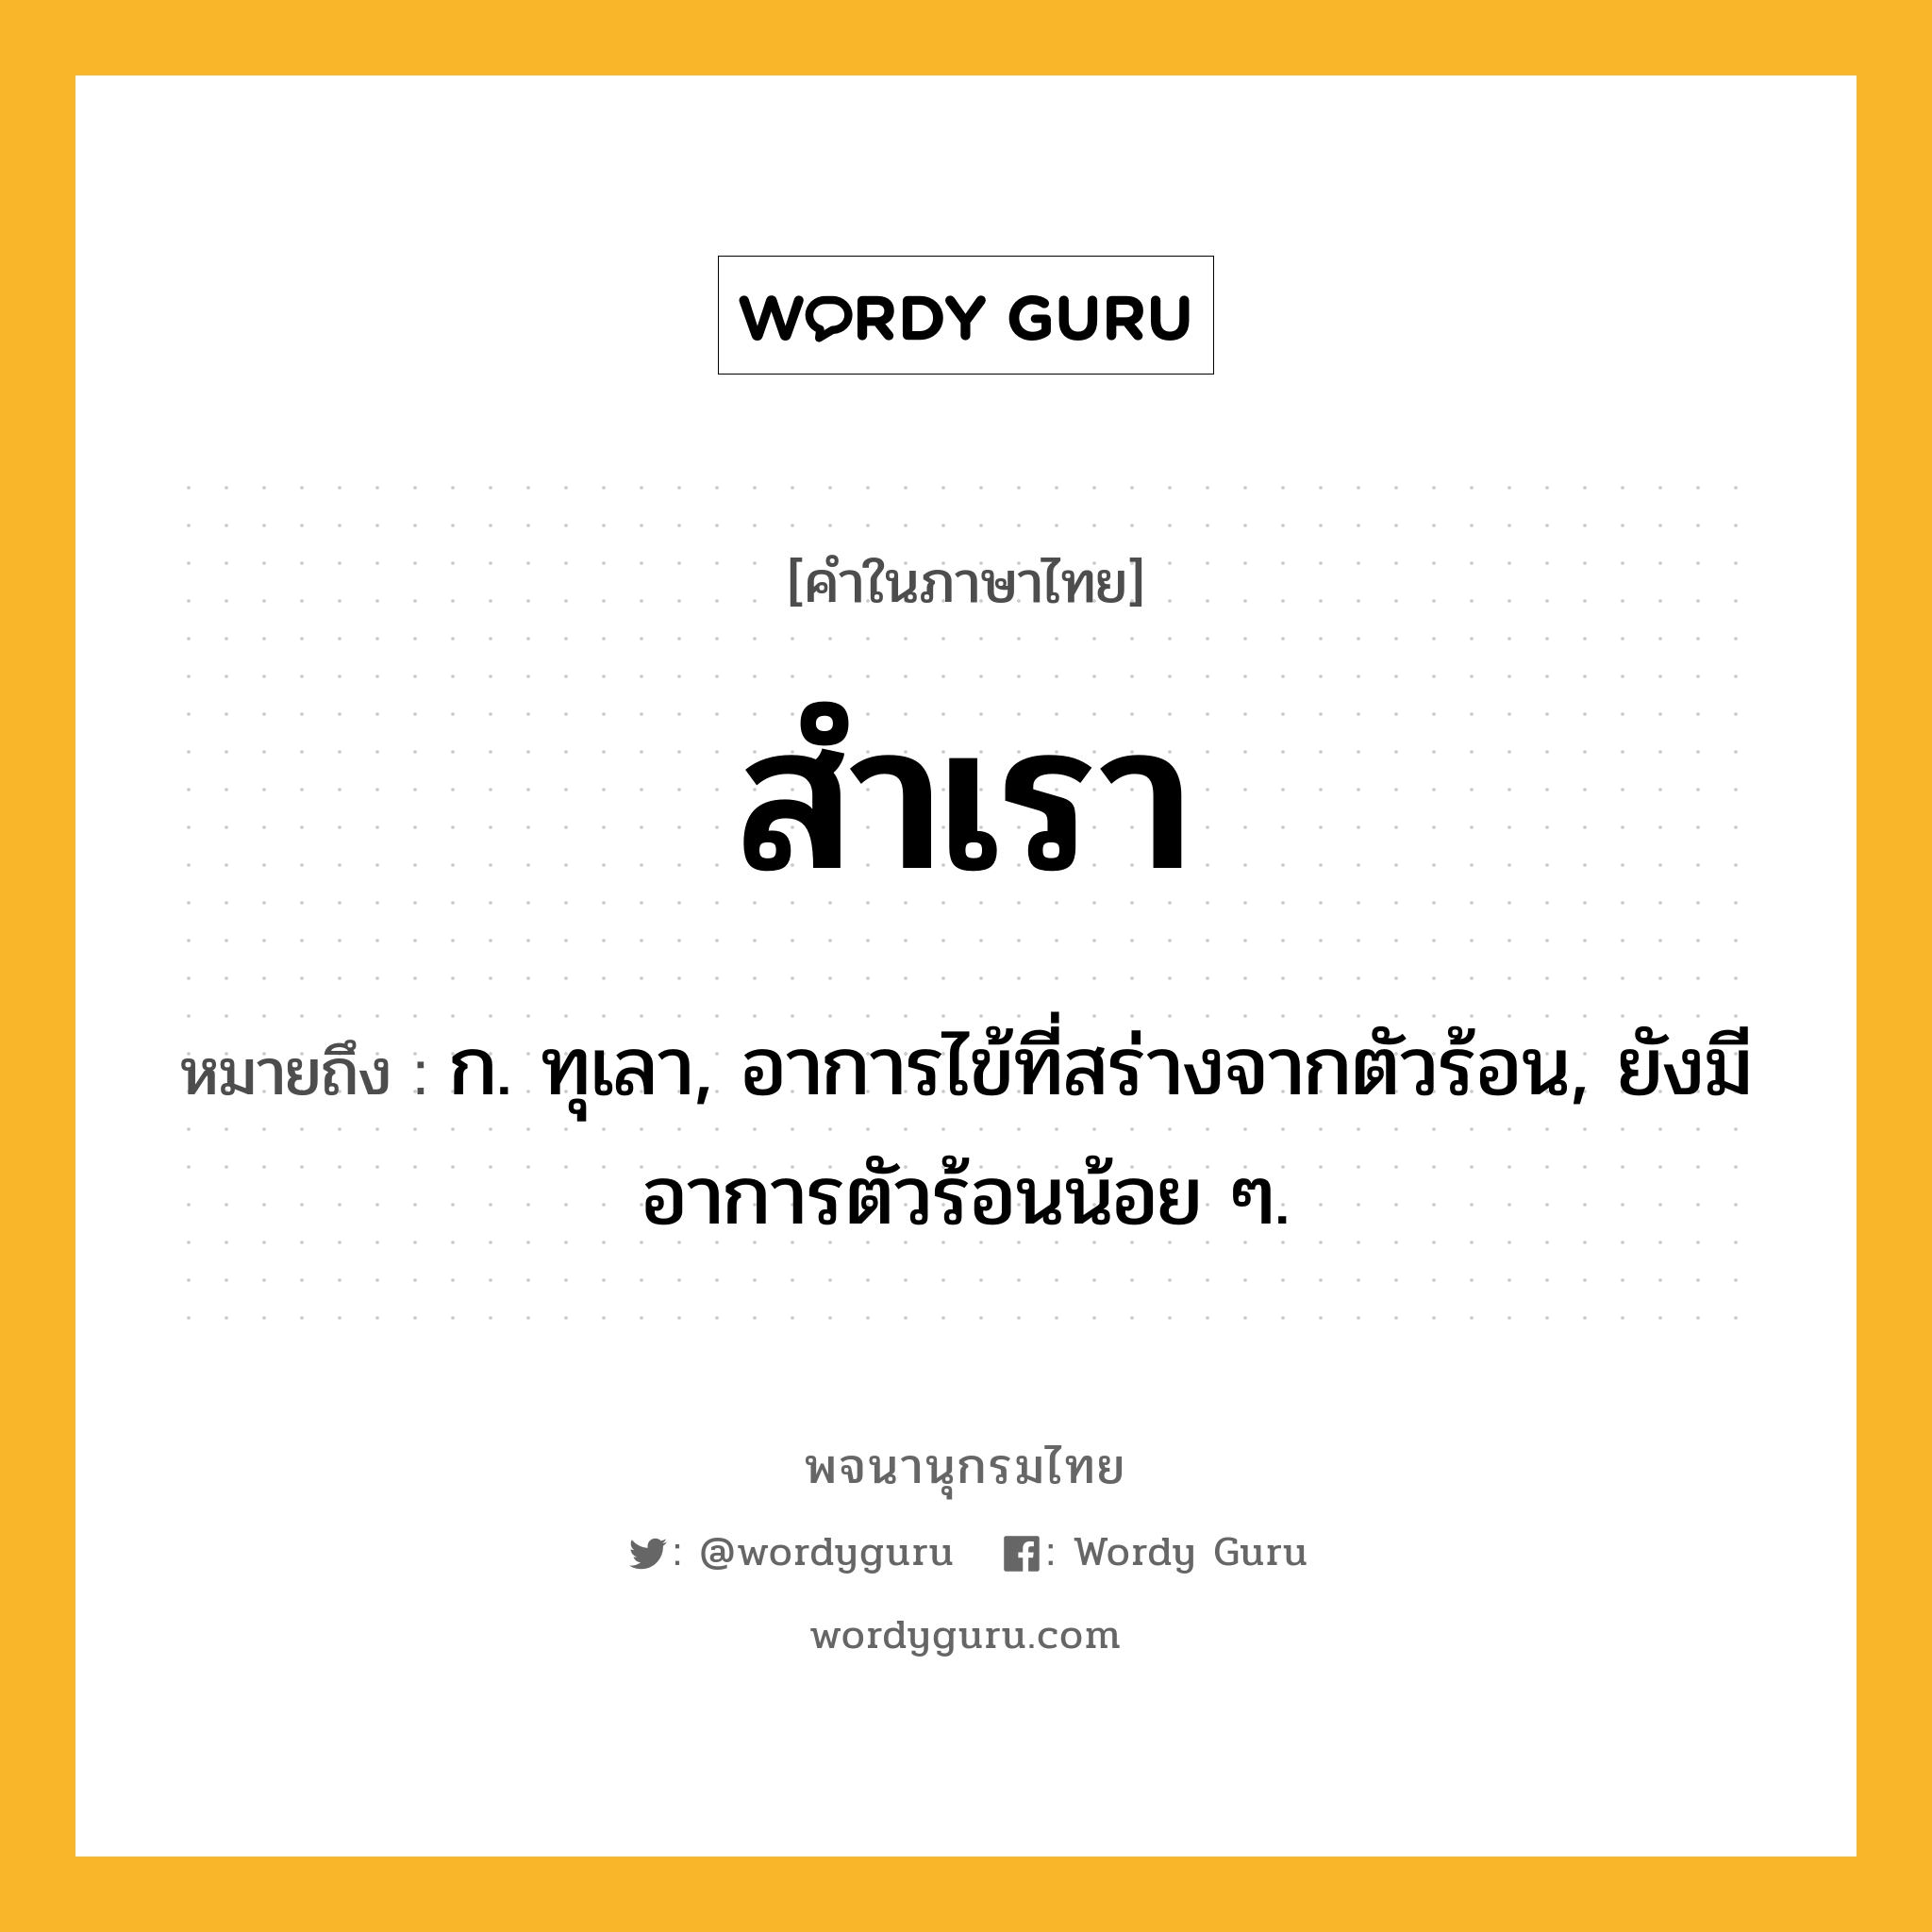 สำเรา หมายถึงอะไร?, คำในภาษาไทย สำเรา หมายถึง ก. ทุเลา, อาการไข้ที่สร่างจากตัวร้อน, ยังมีอาการตัวร้อนน้อย ๆ.